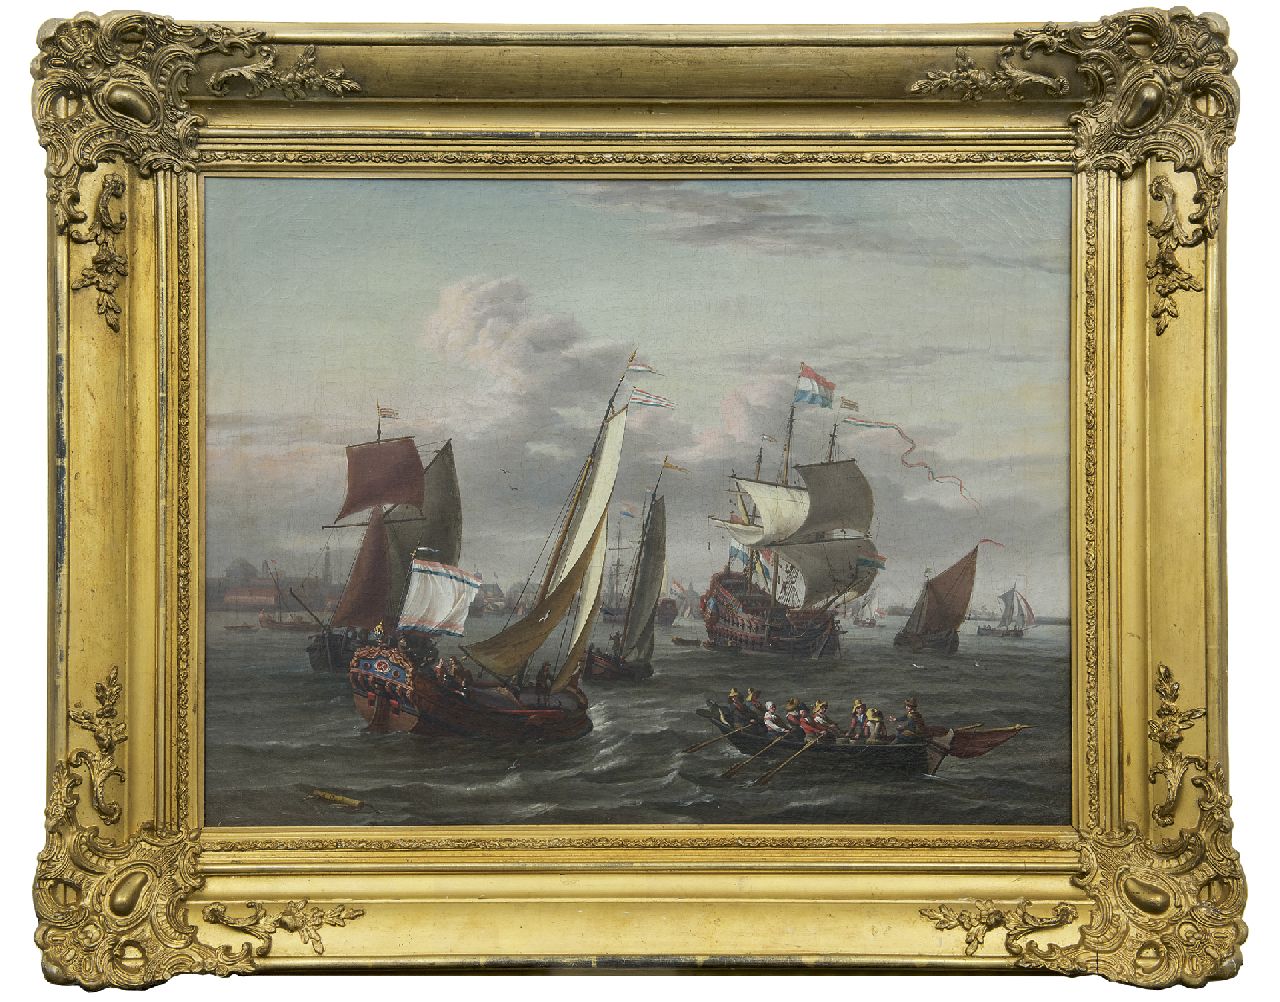 Blaauw J. de | Johannis de Blaauw | Paintings offered for sale | Shipping on the IJ near Amsterdam, oil on canvas 48.3 x 64.5 cm